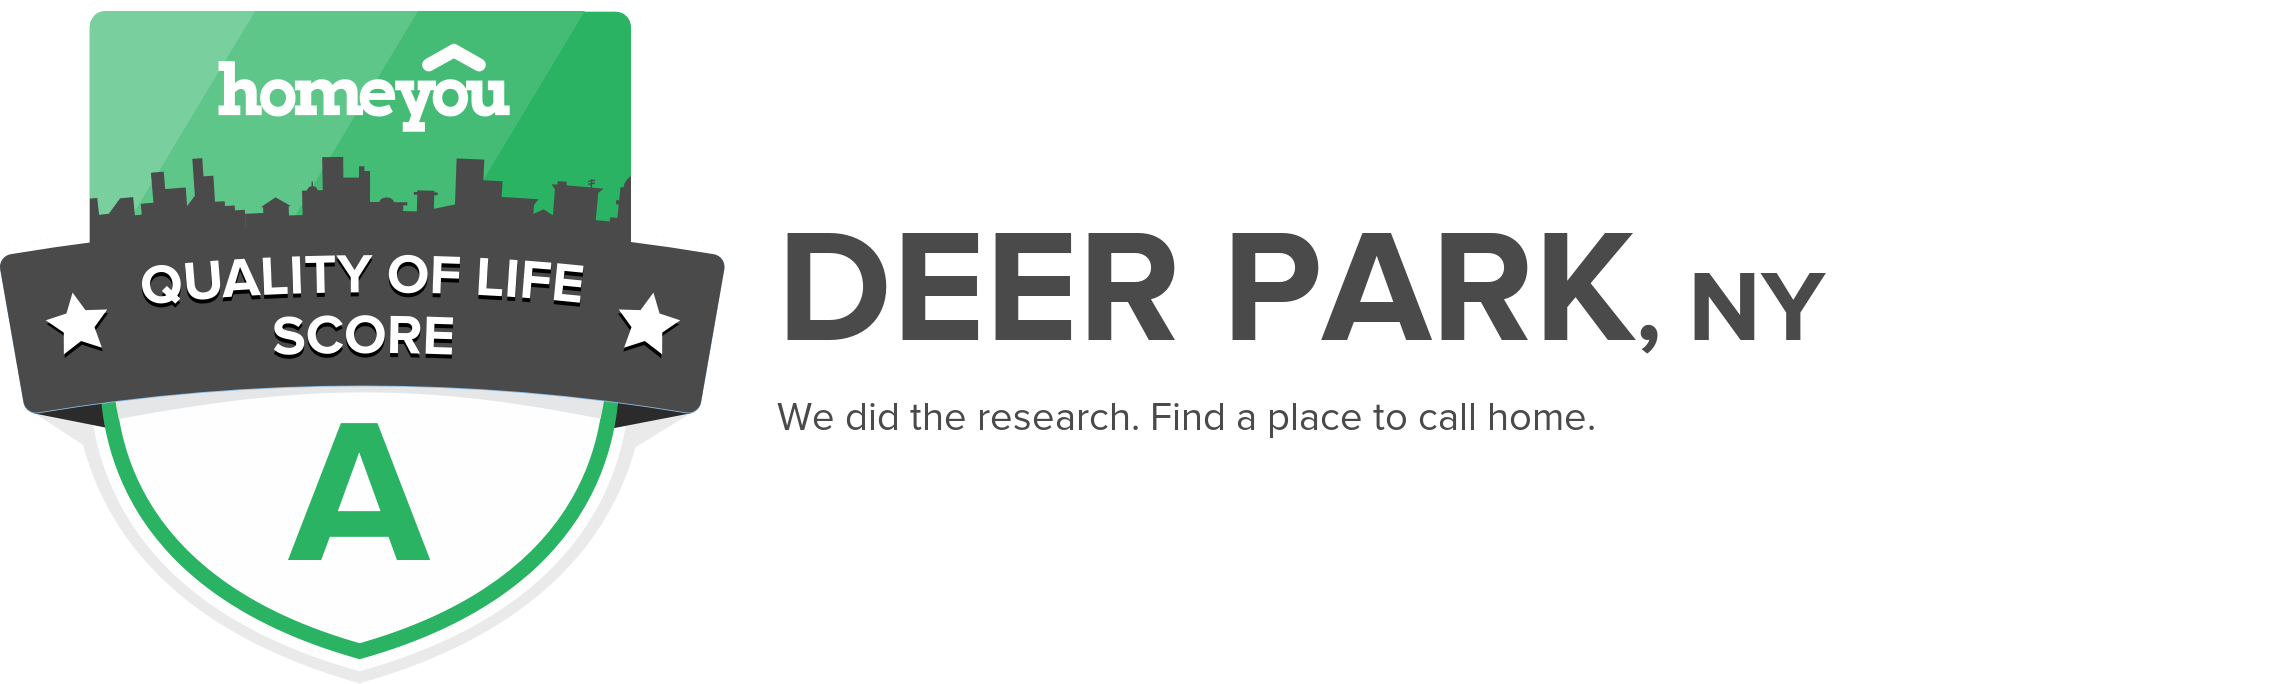 Deer Park, NY